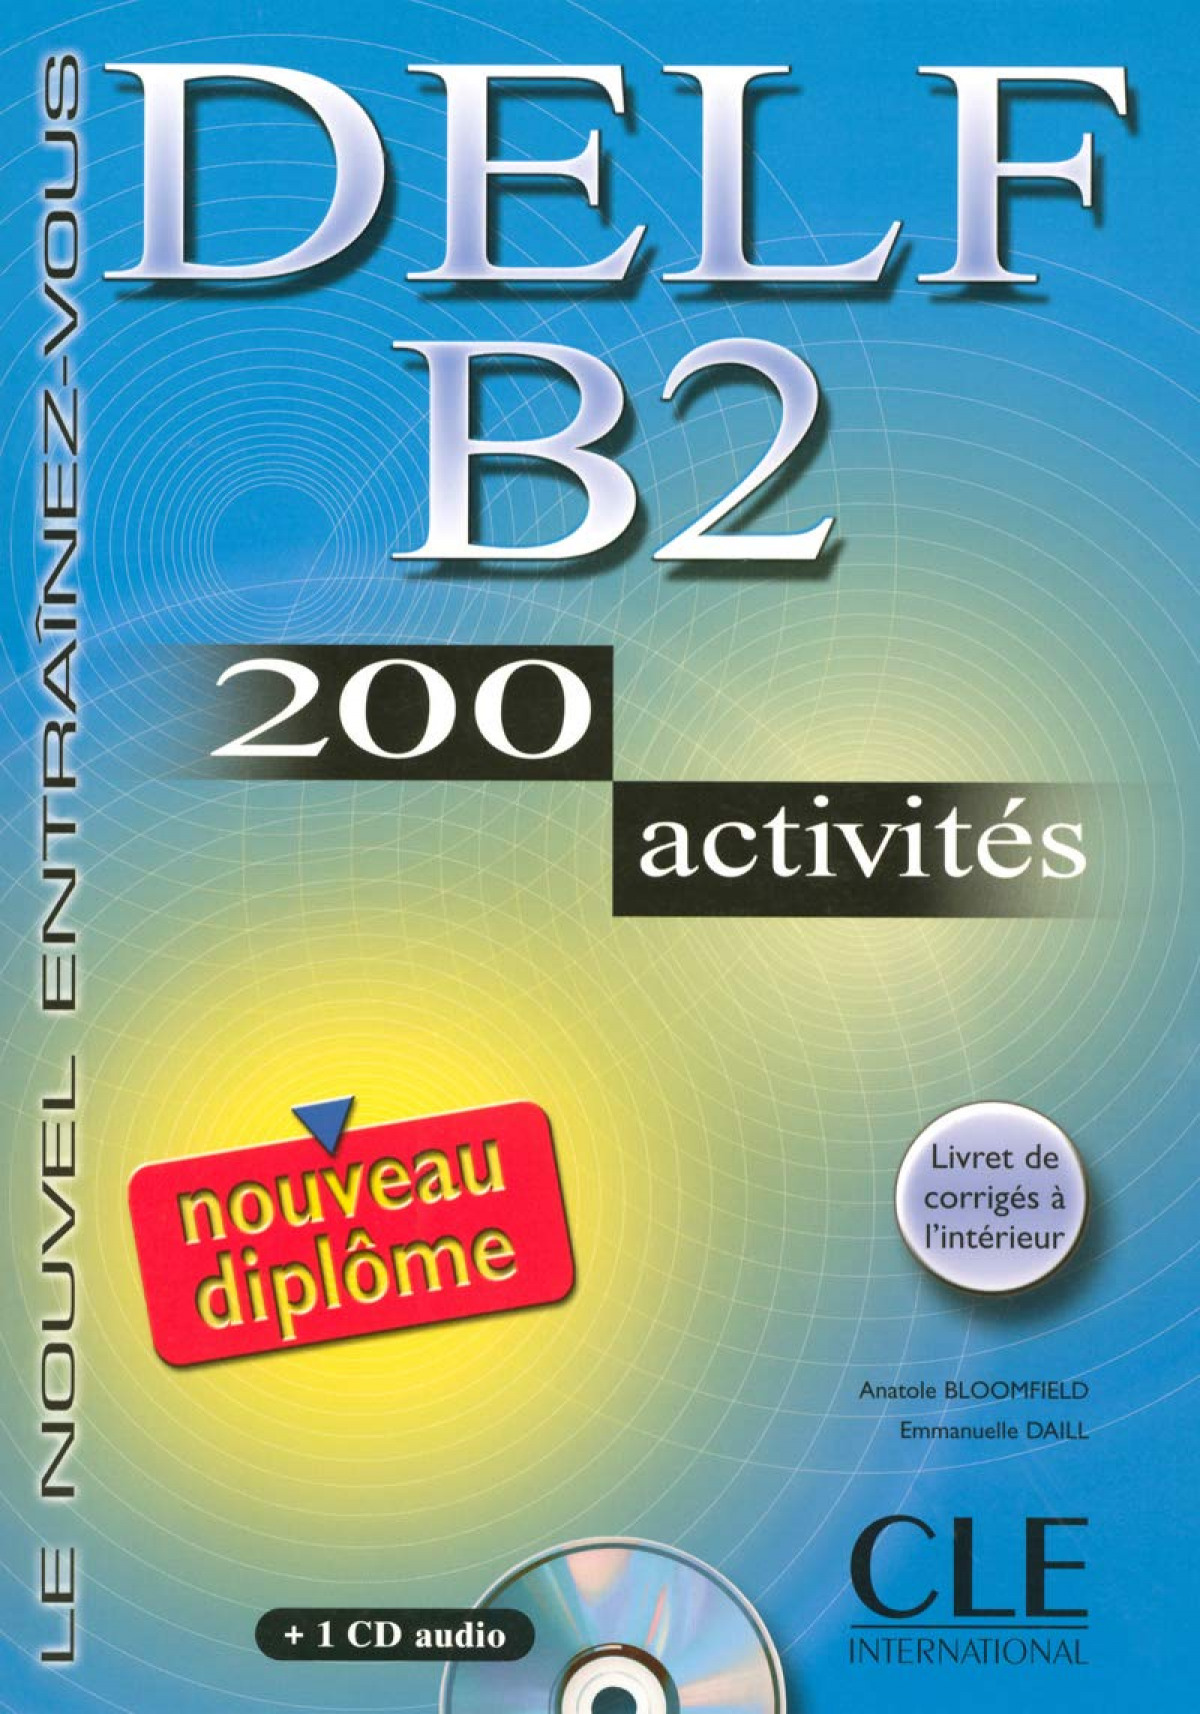 Delf b2 (livre+cd) 200 activites/nouveau diplome - Daill, Emmanuelle/Bloomfield, Anatole